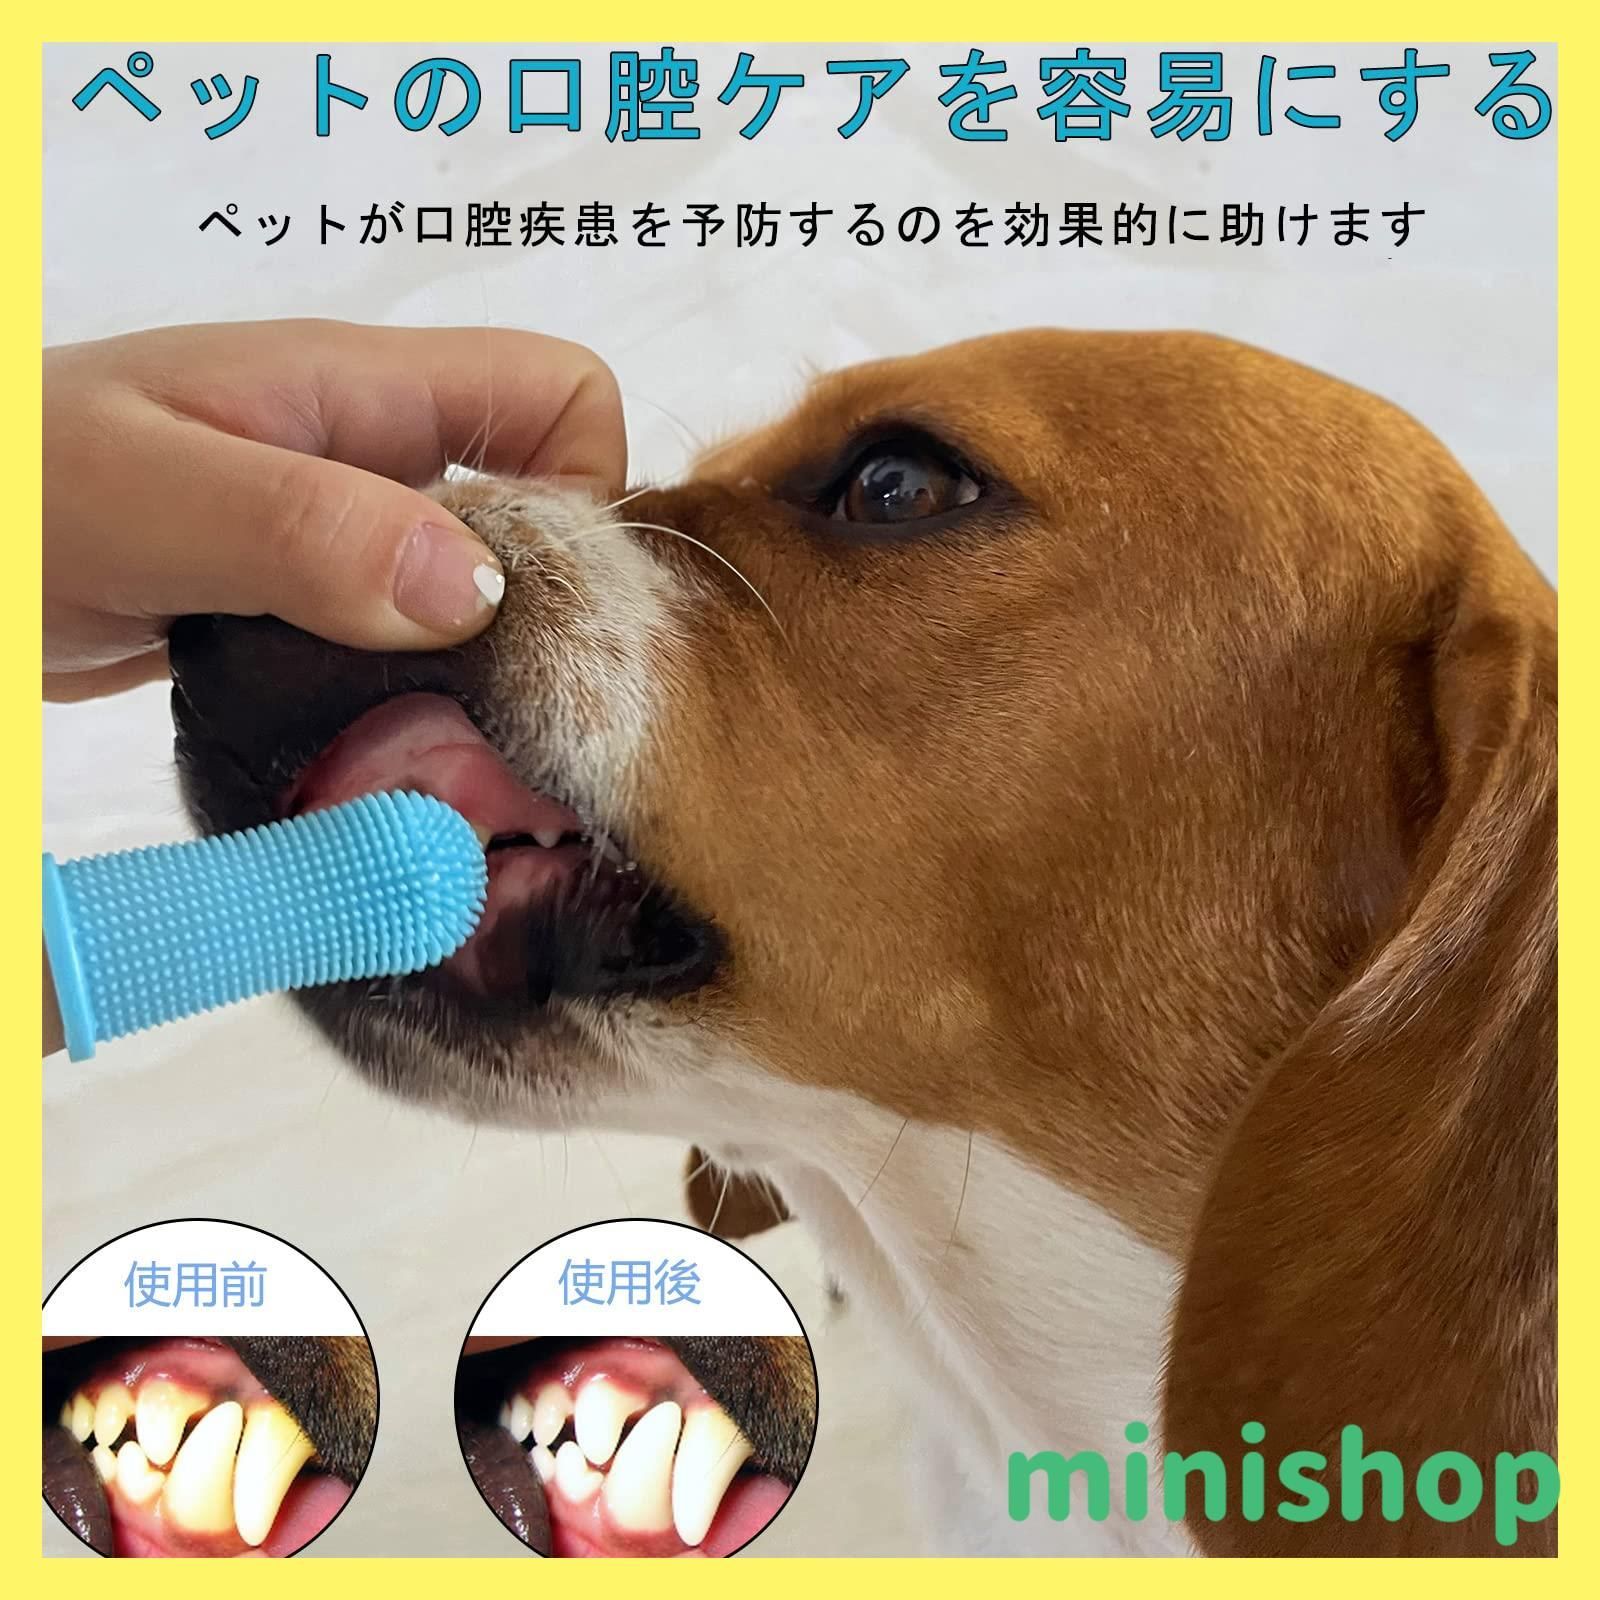 【新着商品】Aujzoo犬歯ブラシ、猫歯ブラシ、360°犬用歯ブラシ、歯ブラシは、犬 はぶらし さまざまな口腔疾患を回避するために、どの犬用歯磨き粉にも使用できます。犬歯ブラシ、シリコン犬の歯ブラシ指ブラシミックスカラーセット4。